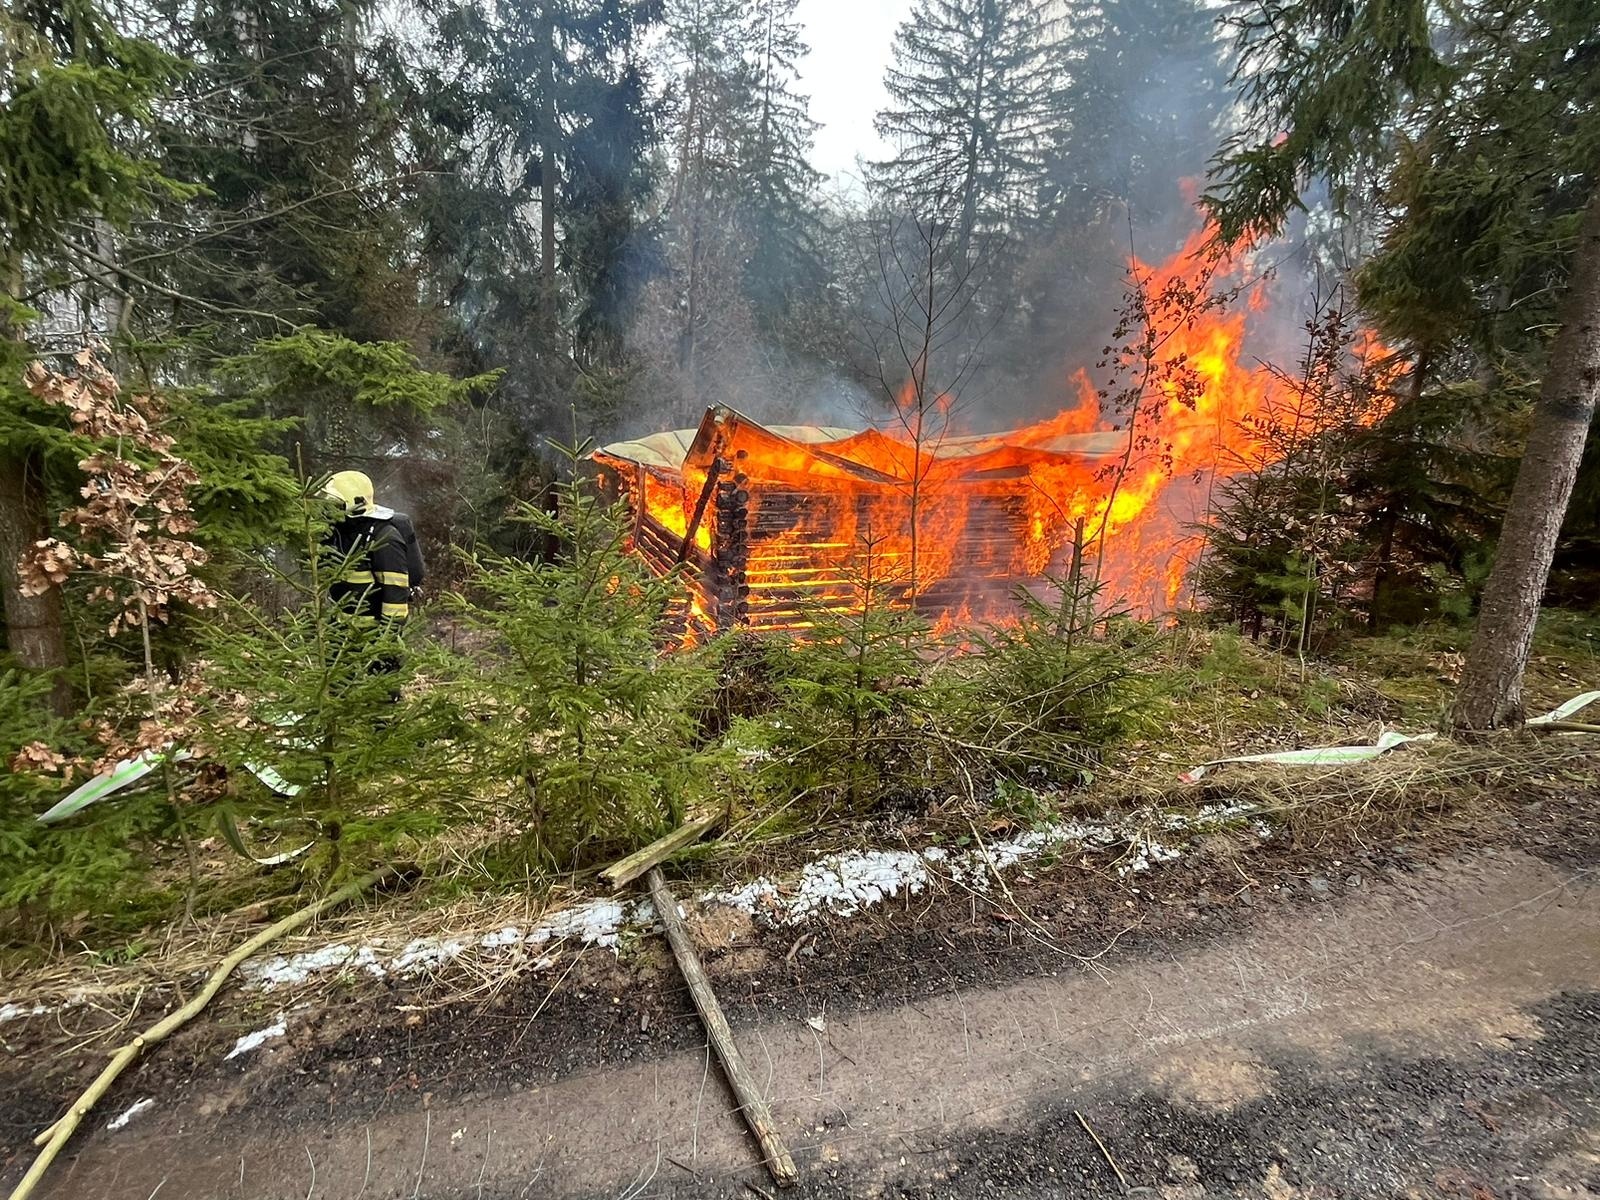 003-Požár roubené chaty v rekreační oblasti u obce Psáry nedaleko Prahy.jpg